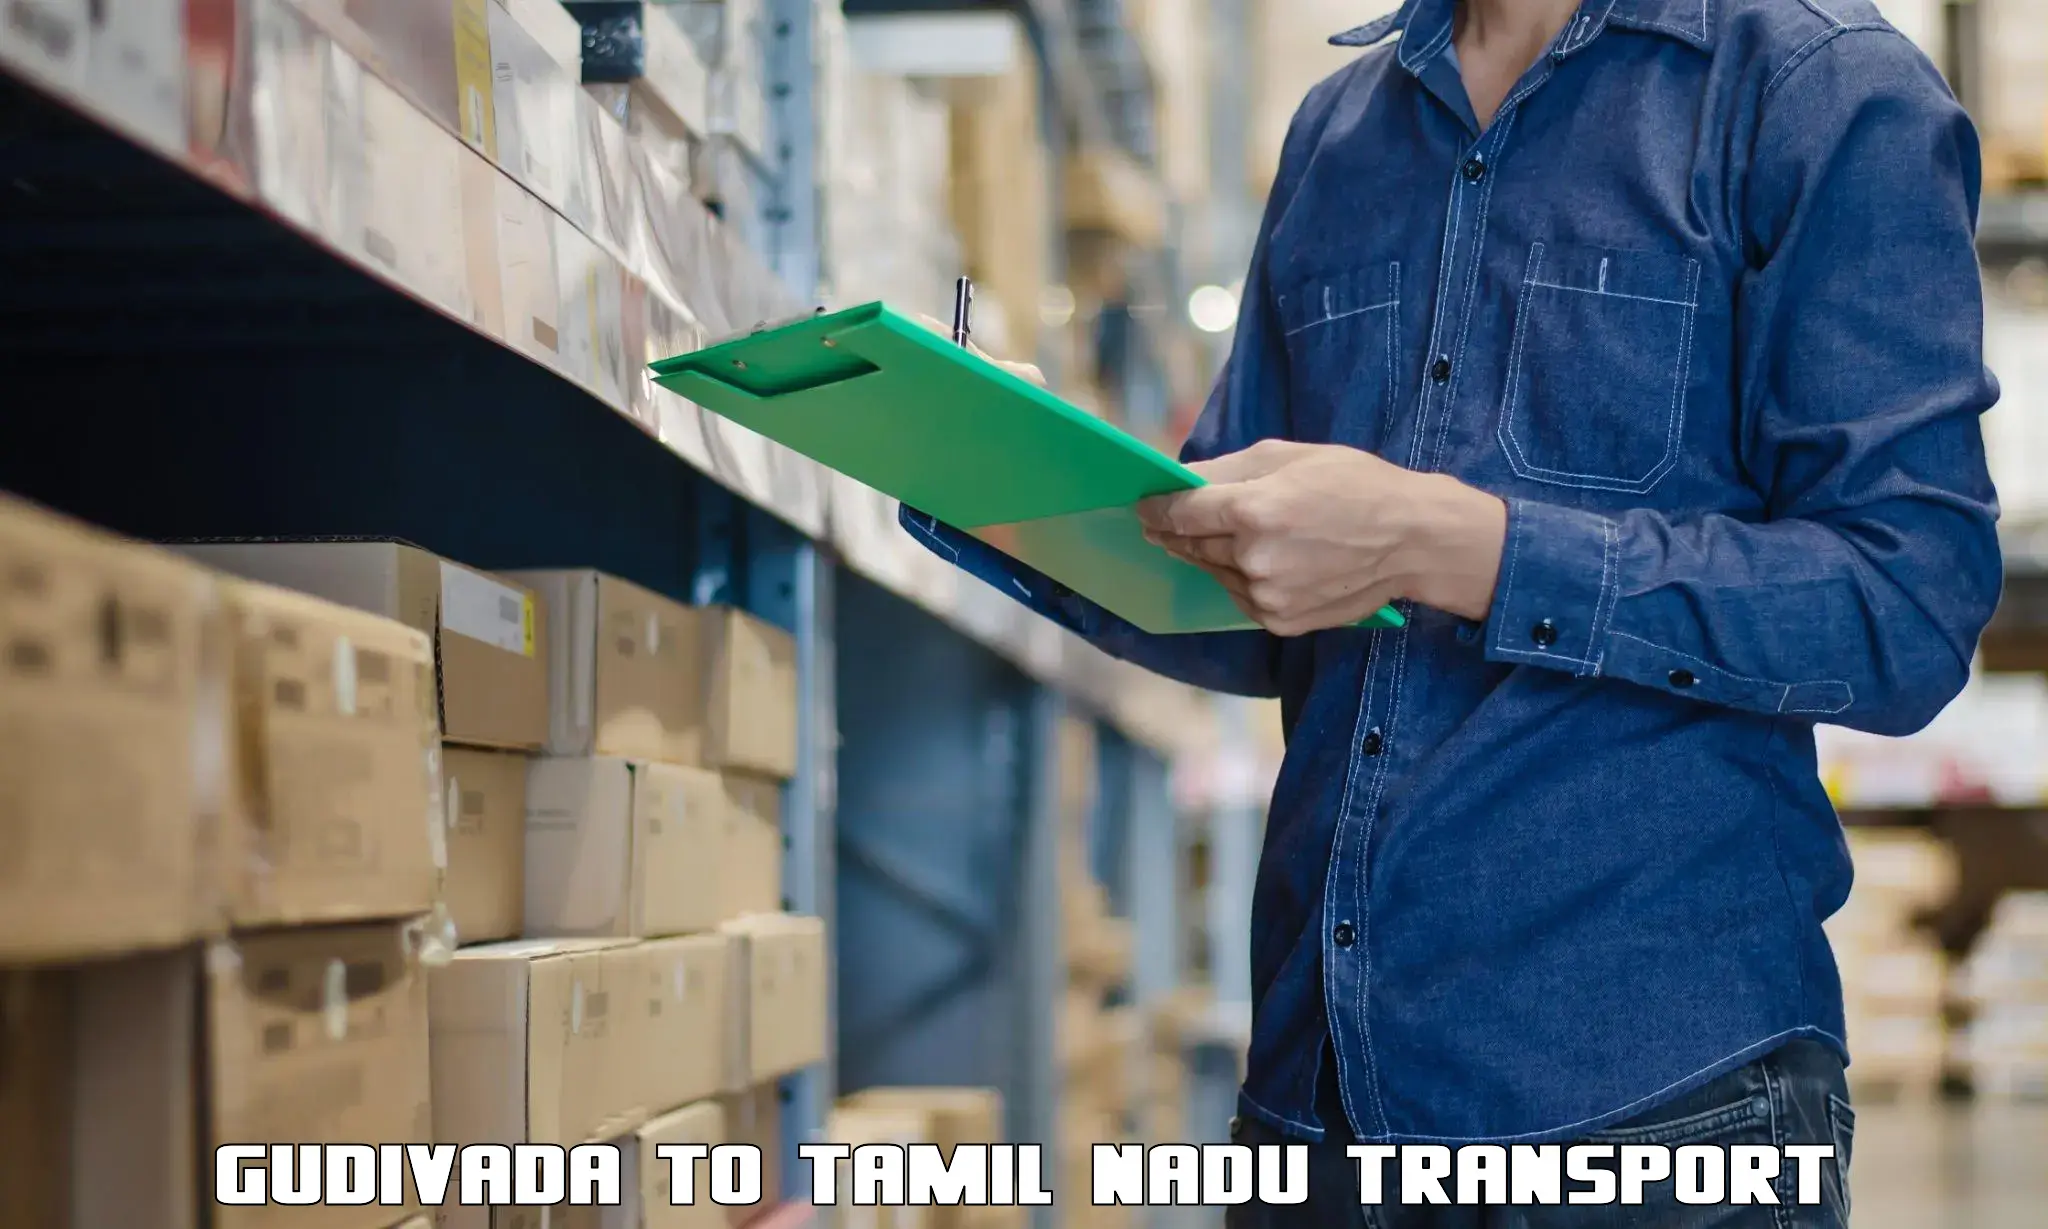 Furniture transport service Gudivada to Tamil Nadu